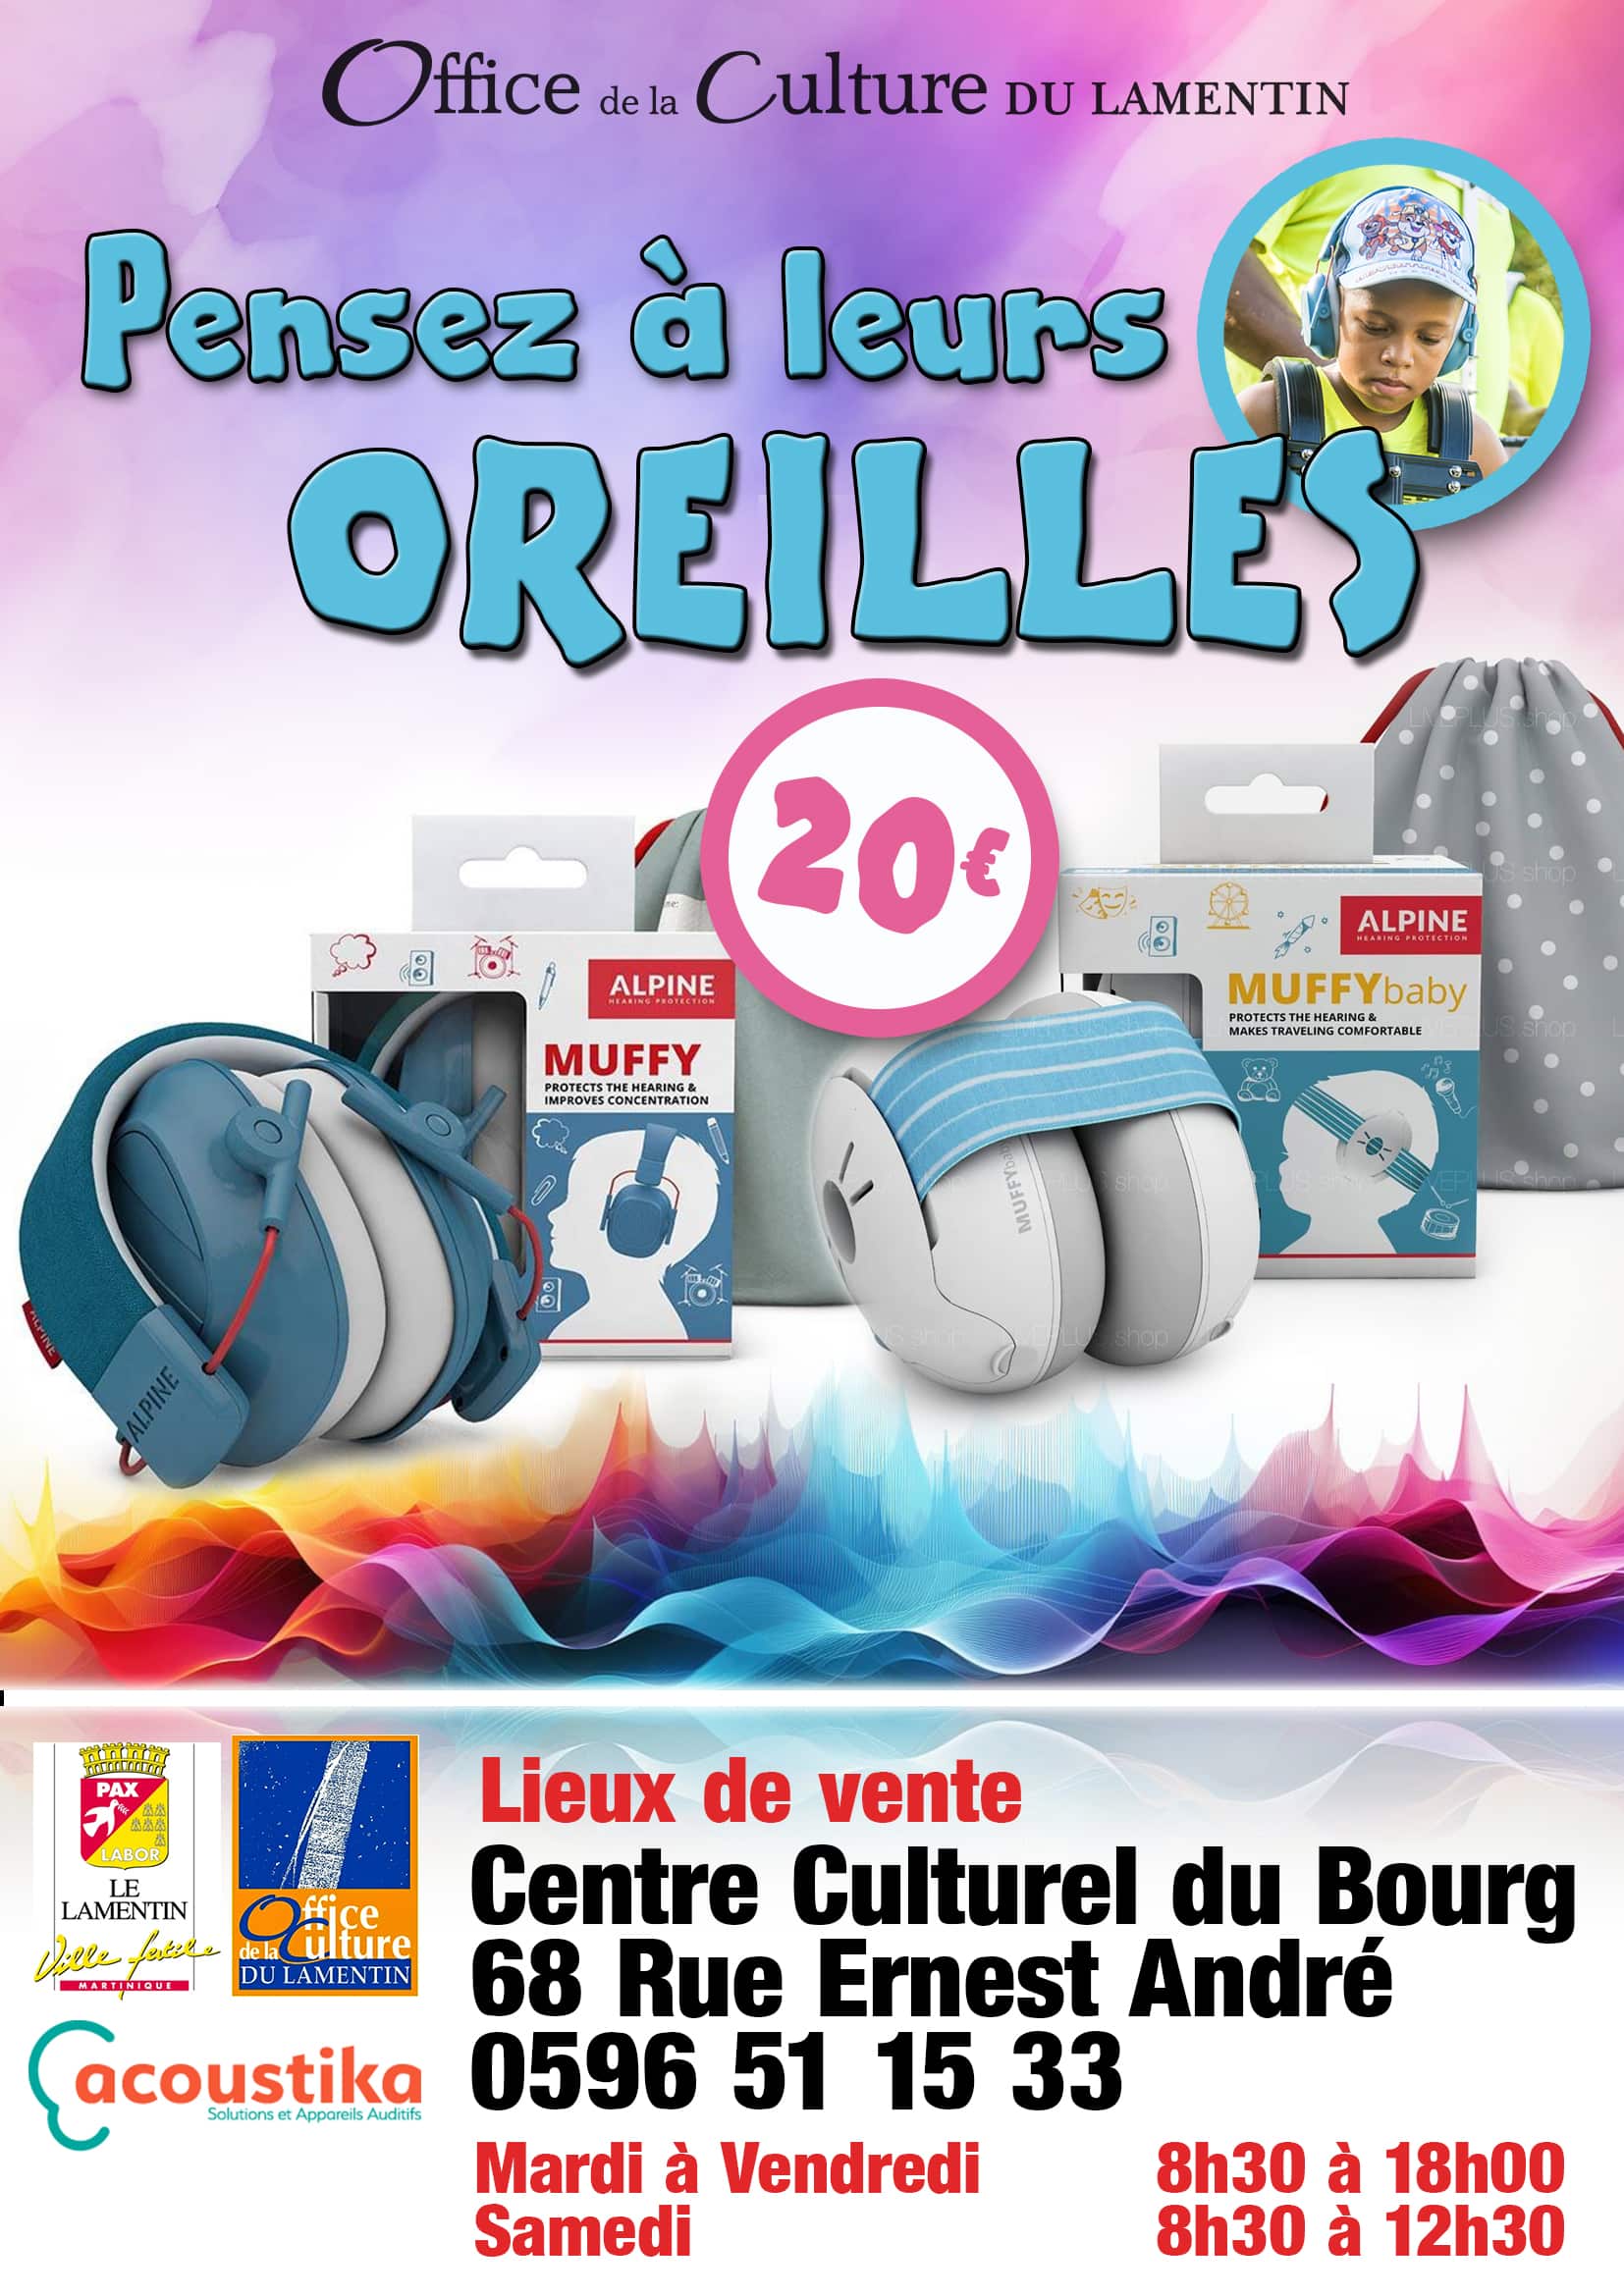 Protégez vos enfants des violences sonores durant ce Carnaval. des casques pour enfants et bébés sont disponibles au centre culturel du Bourg au tarif de 20€.